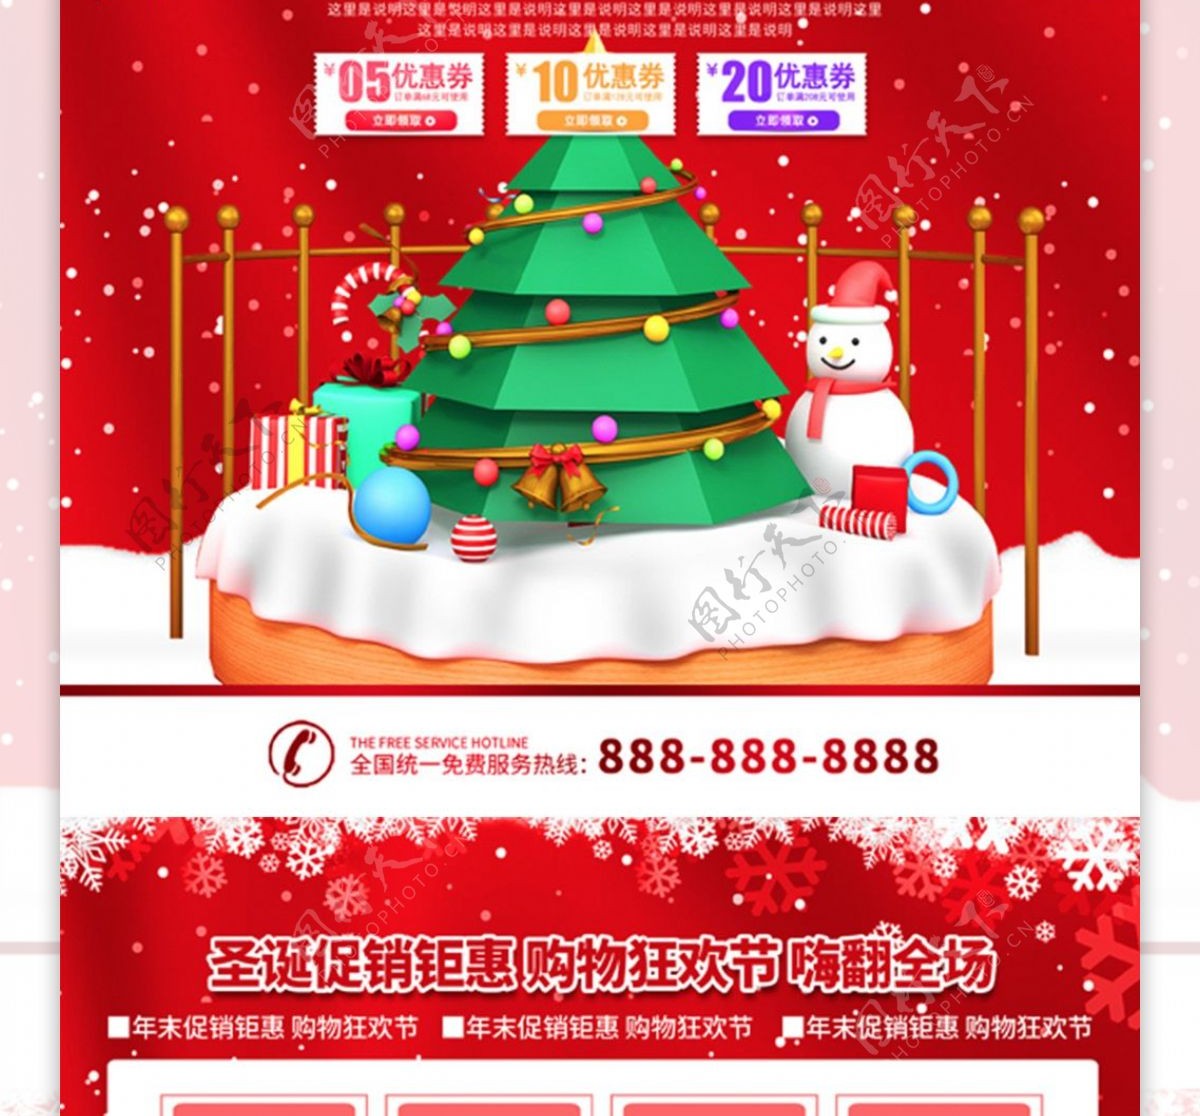 简约红色立体字超市圣诞促销DM宣传单页